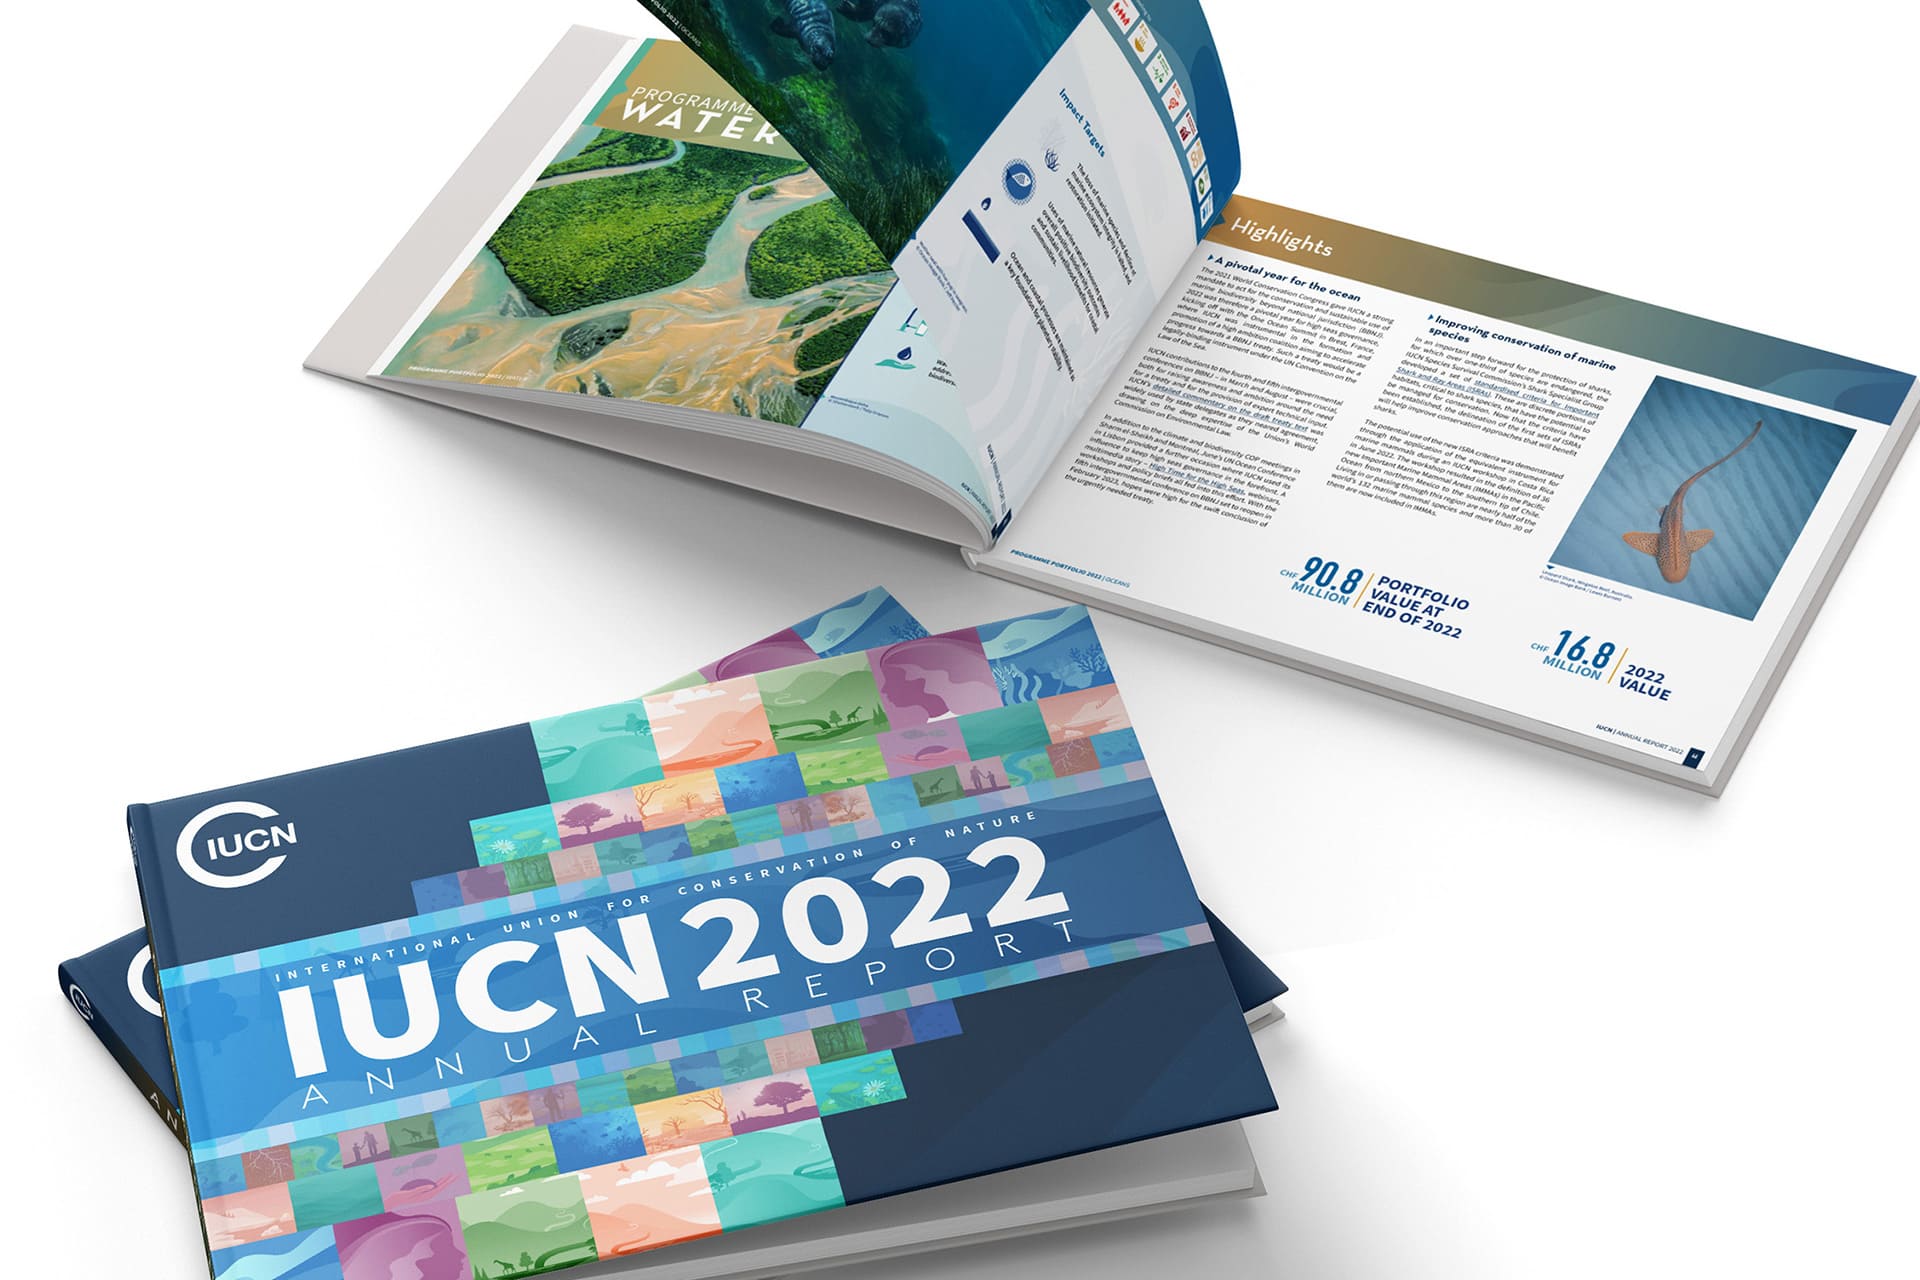 IUCN Case Study